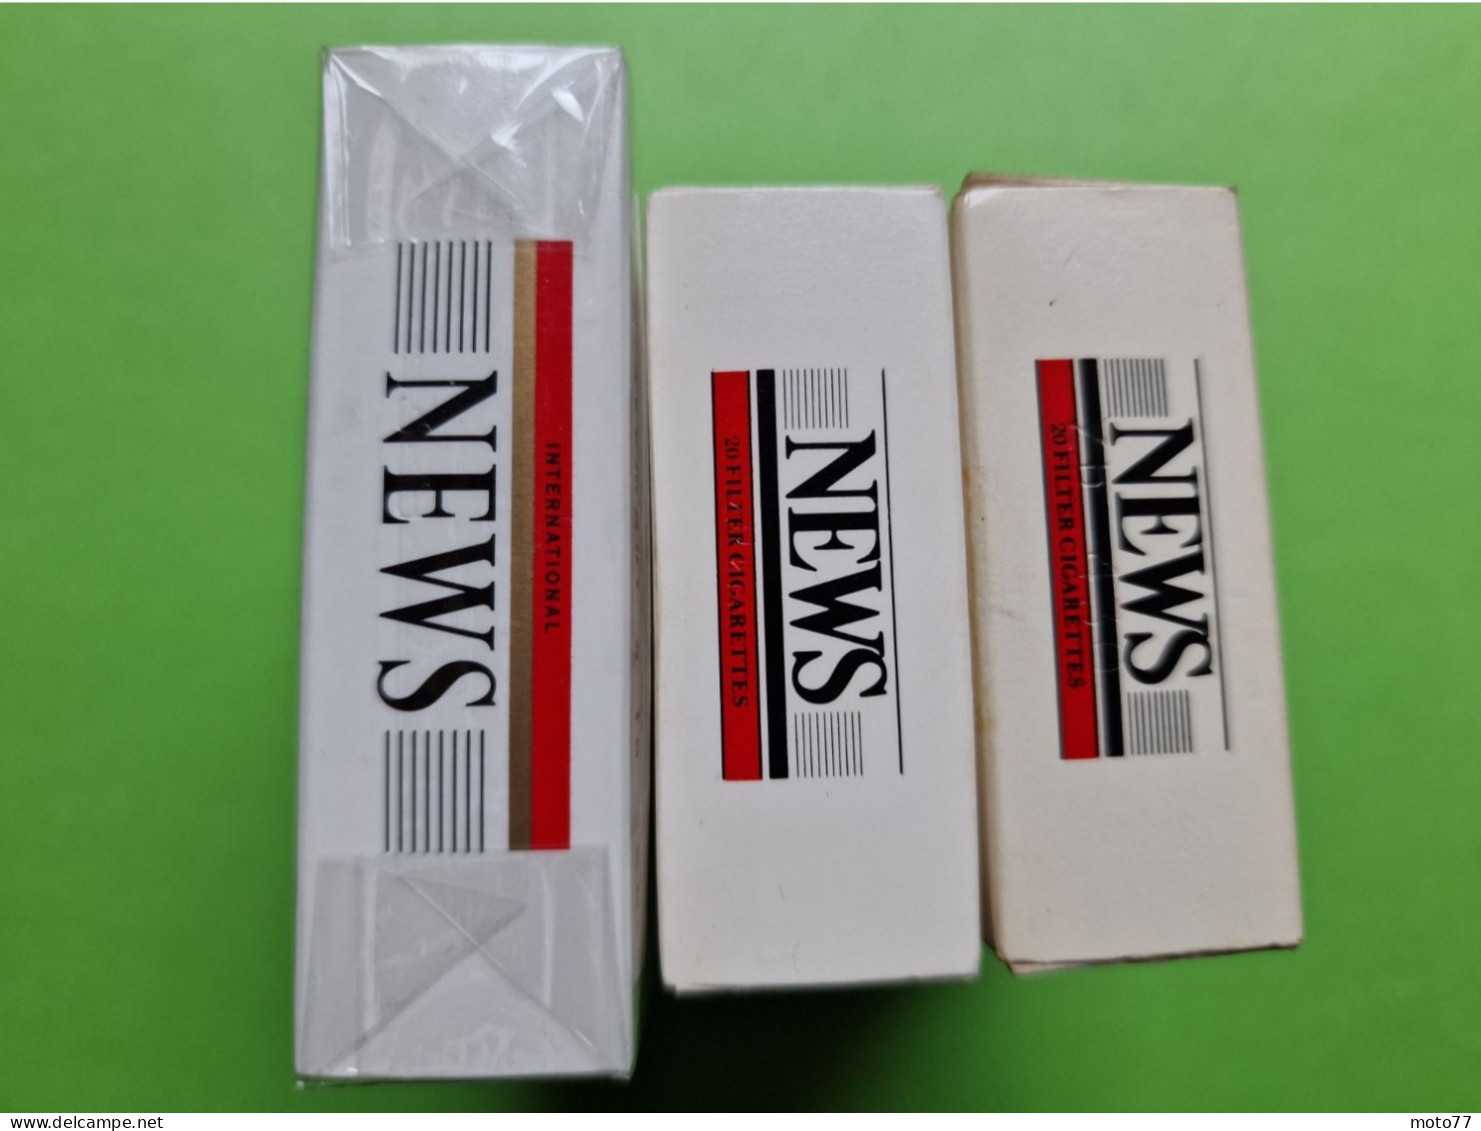 Lot 3 Anciens PAQUETS De CIGARETTES Vide - NEWS - Vers 1980 - Etuis à Cigarettes Vides